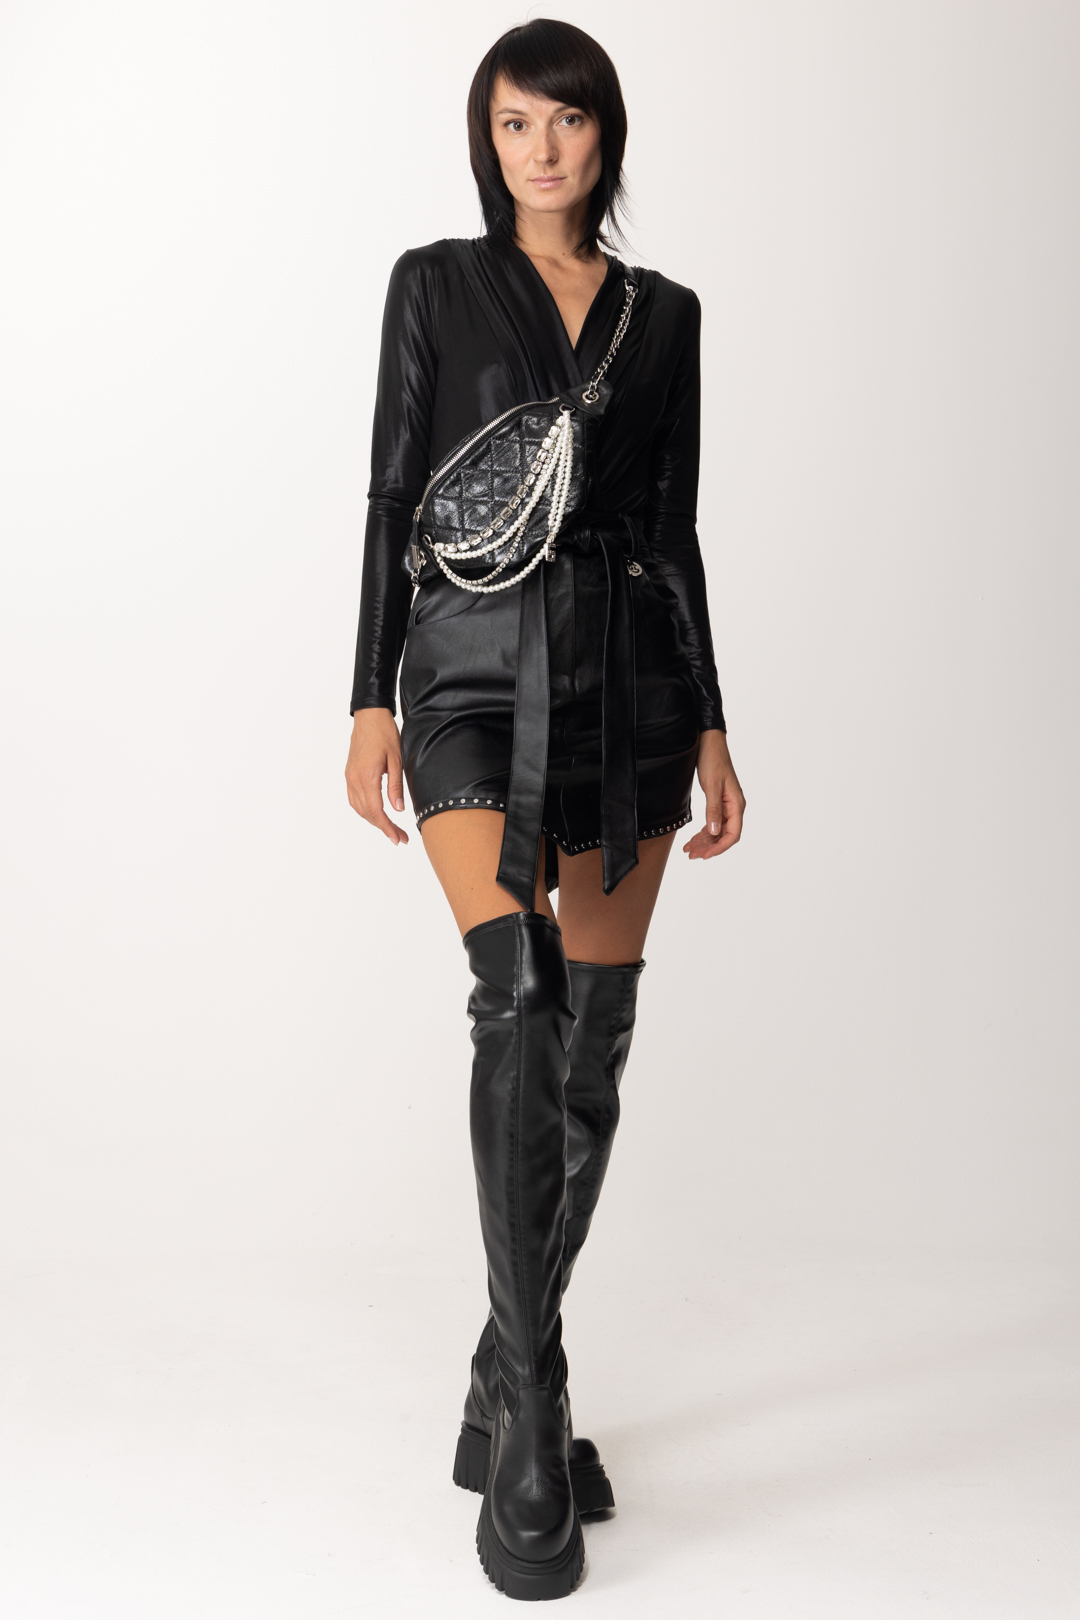 Vista previa: Gaelle Paris Minifalda de piel con tachuelas y cinturón. Nero